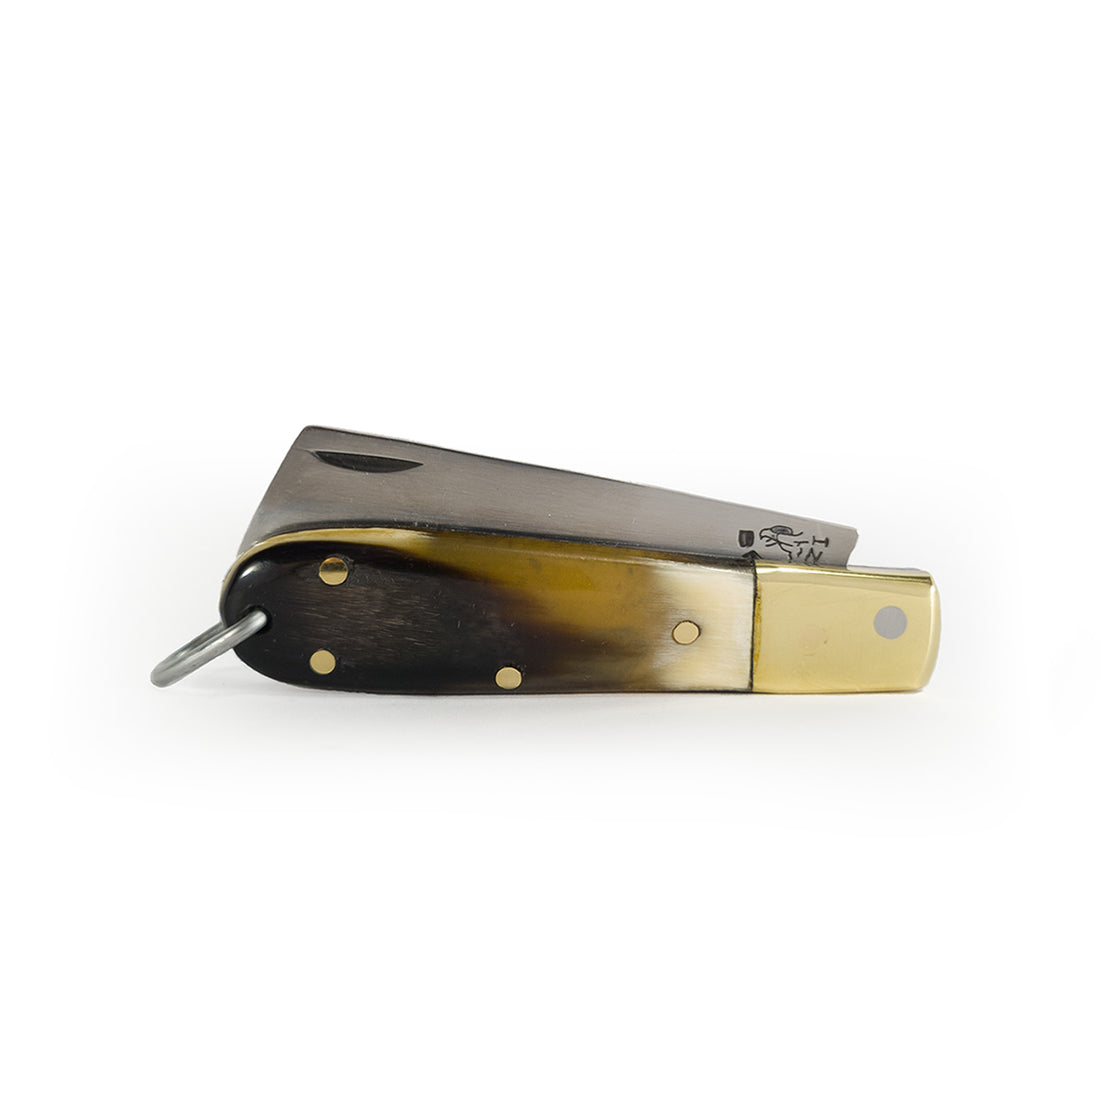 Canivete de bolso artesanal tradicional modelo Biscaro cabo com chifre